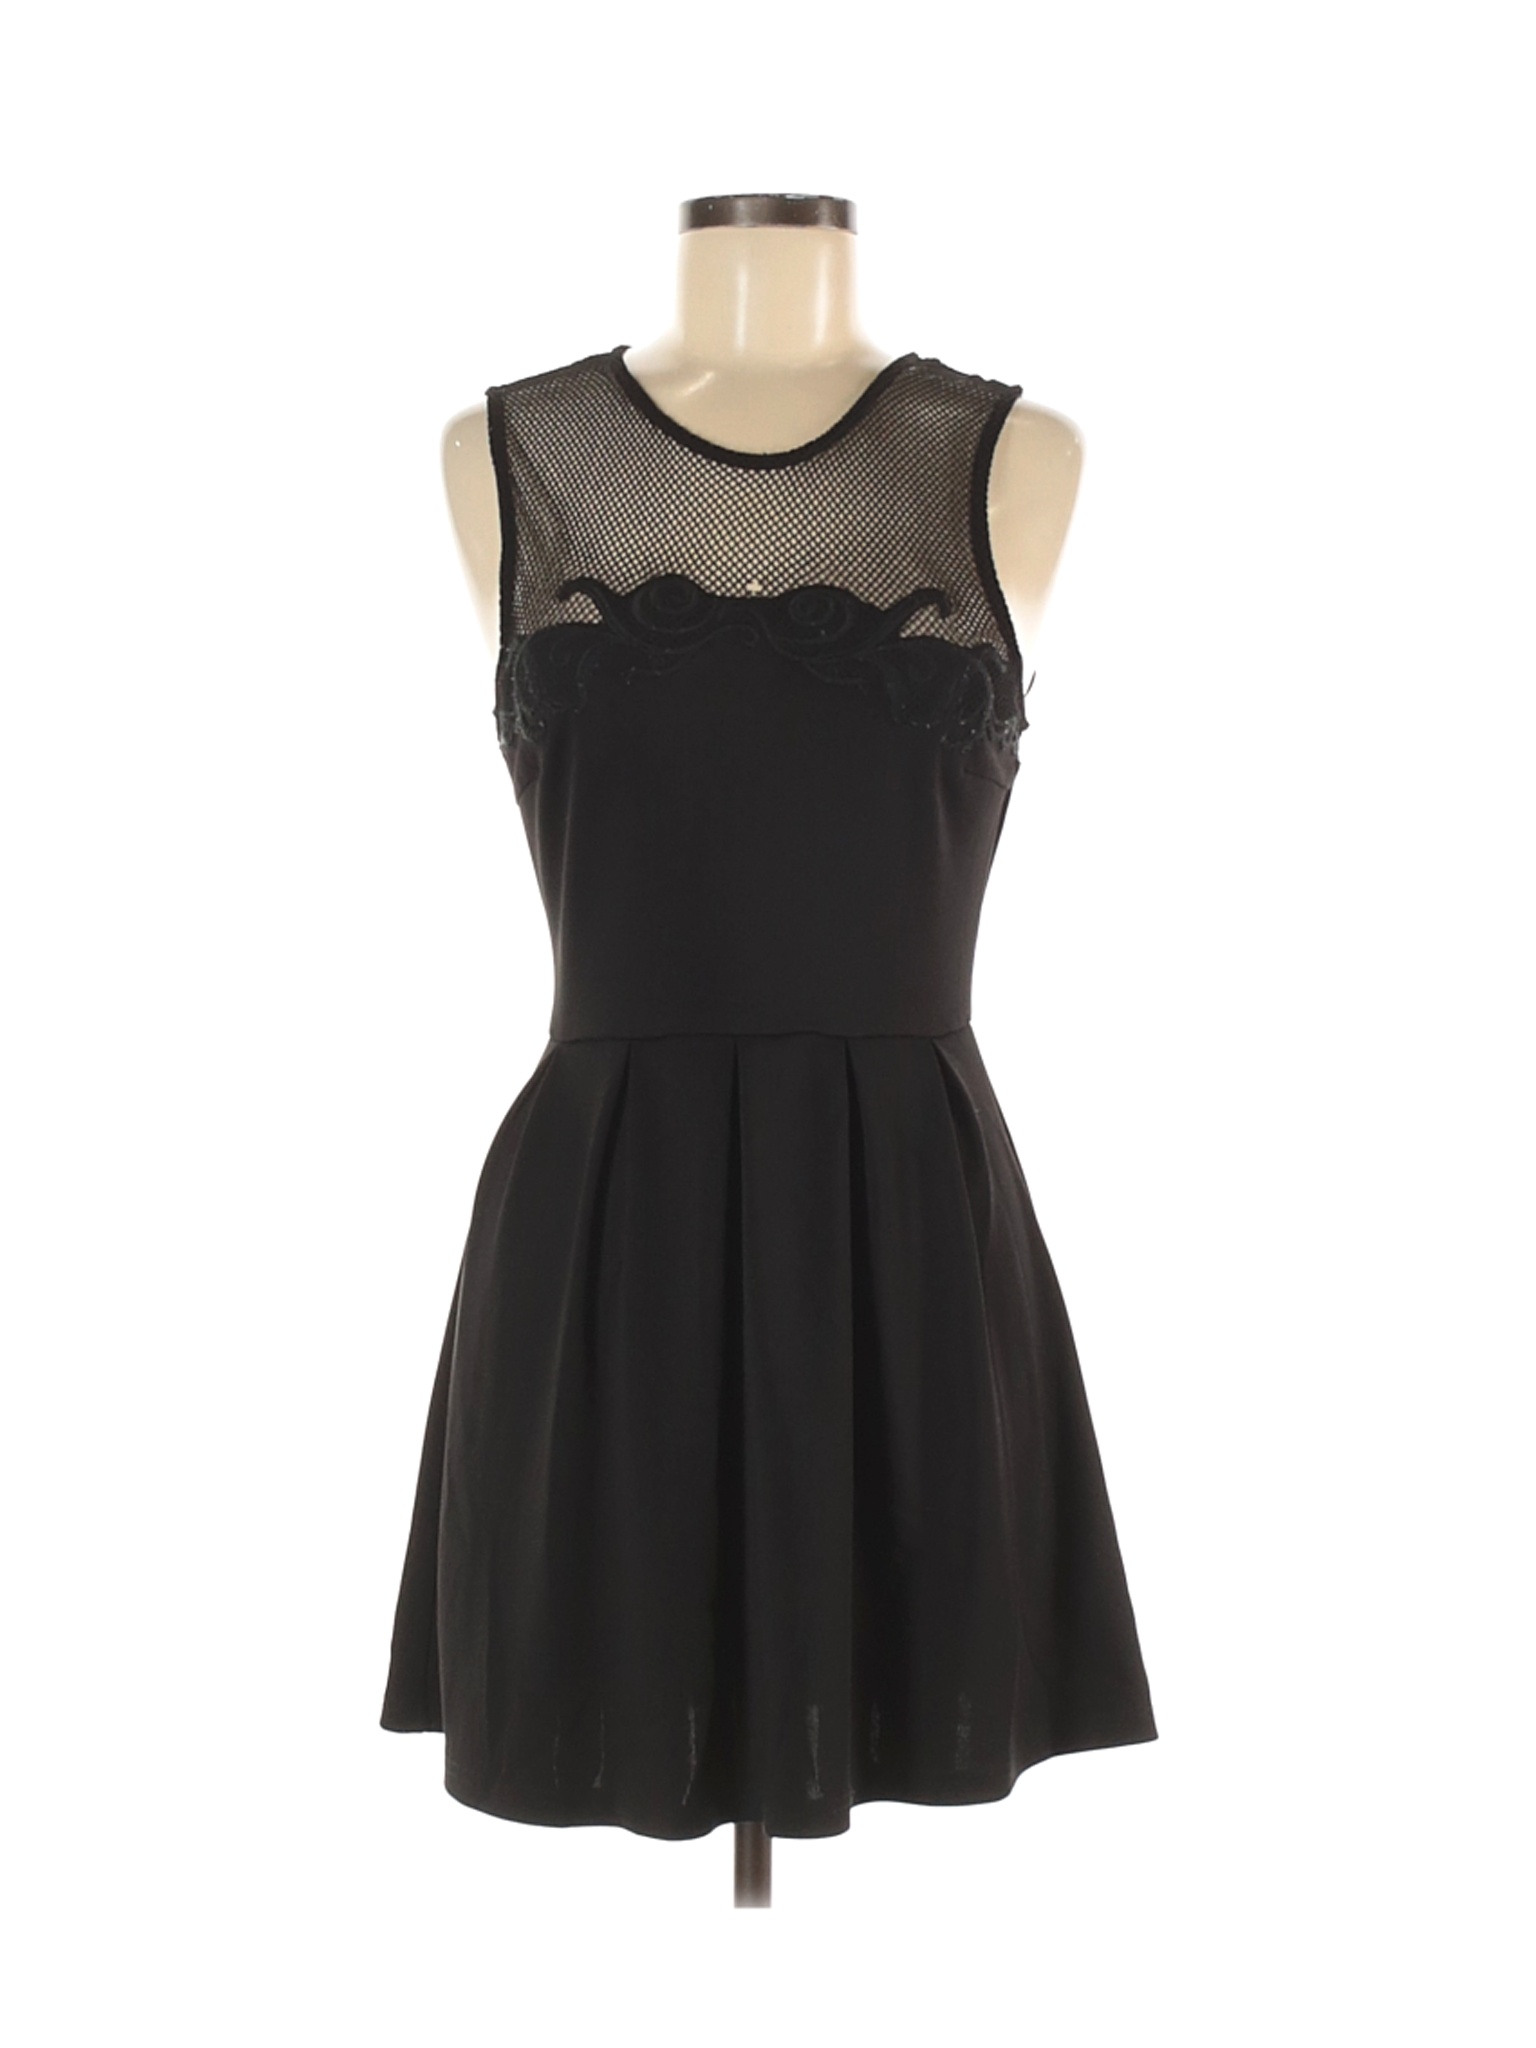 Forever 21 Women Black Cocktail Dress M | eBay